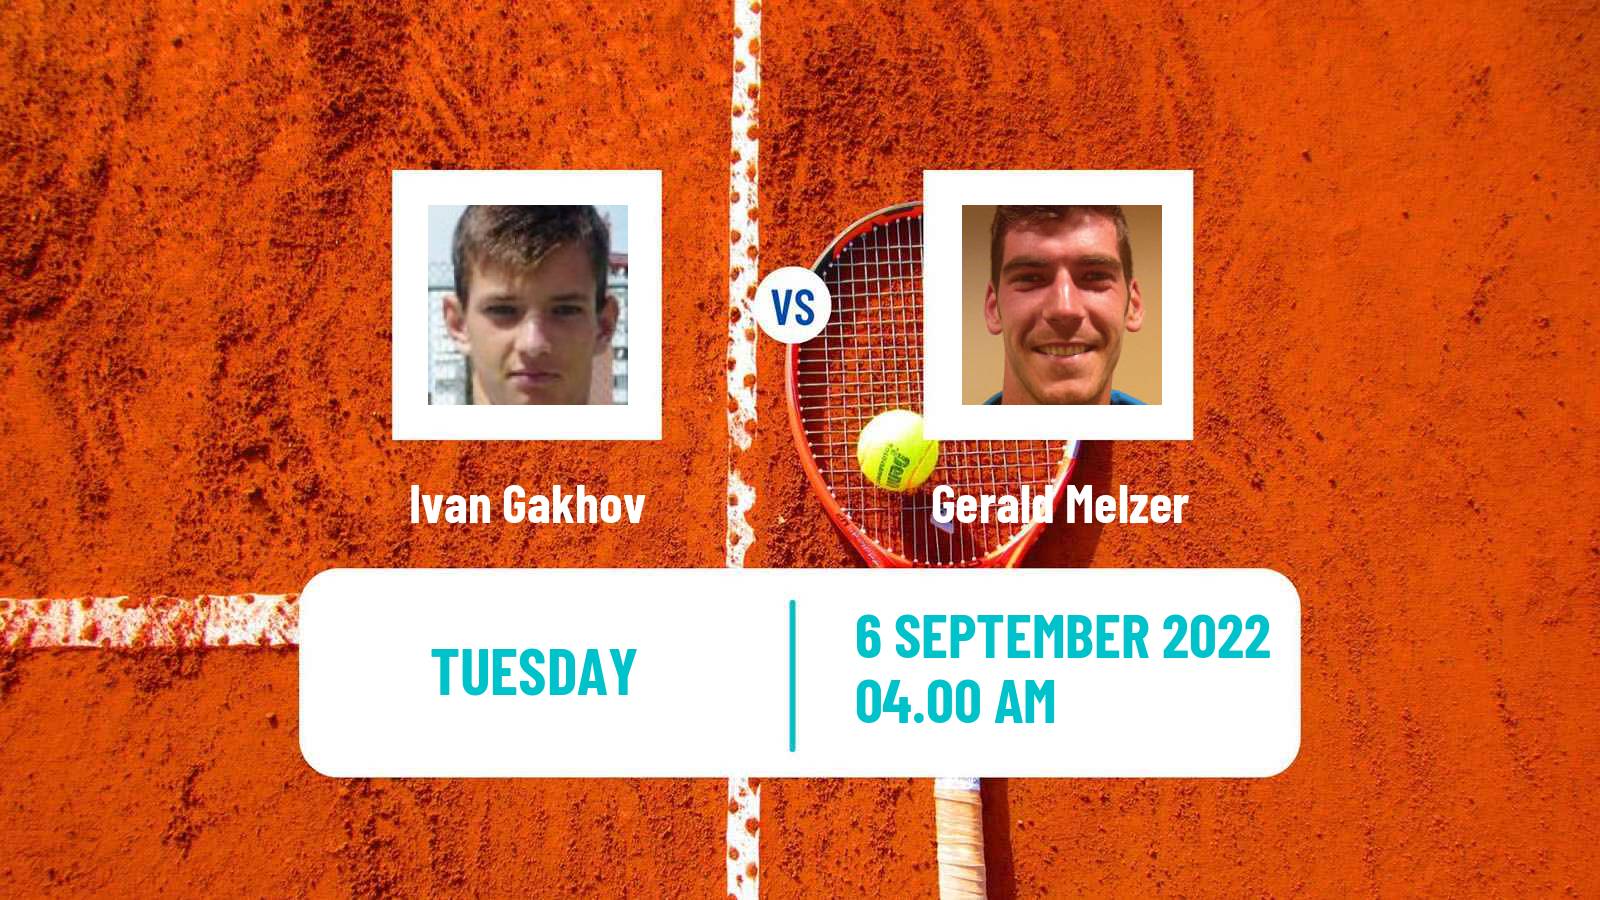 Tennis ATP Challenger Ivan Gakhov - Gerald Melzer